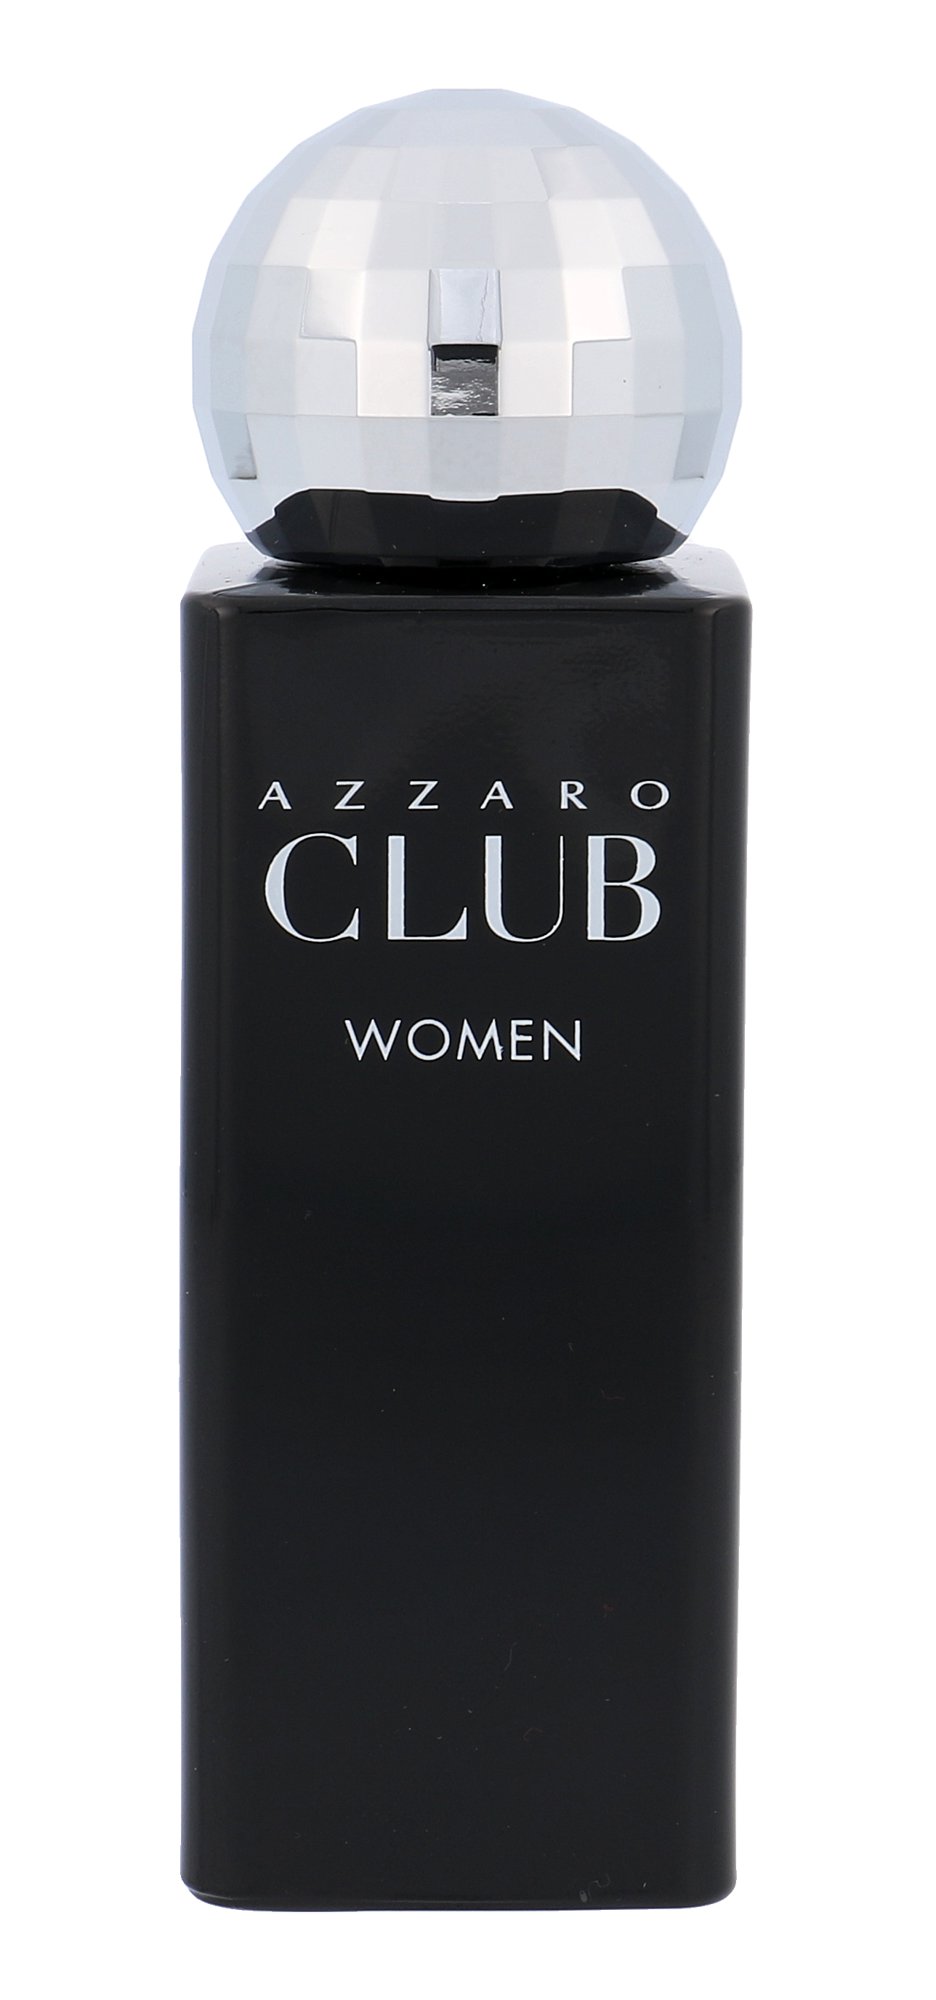 Azzaro Club Women, edt 75ml